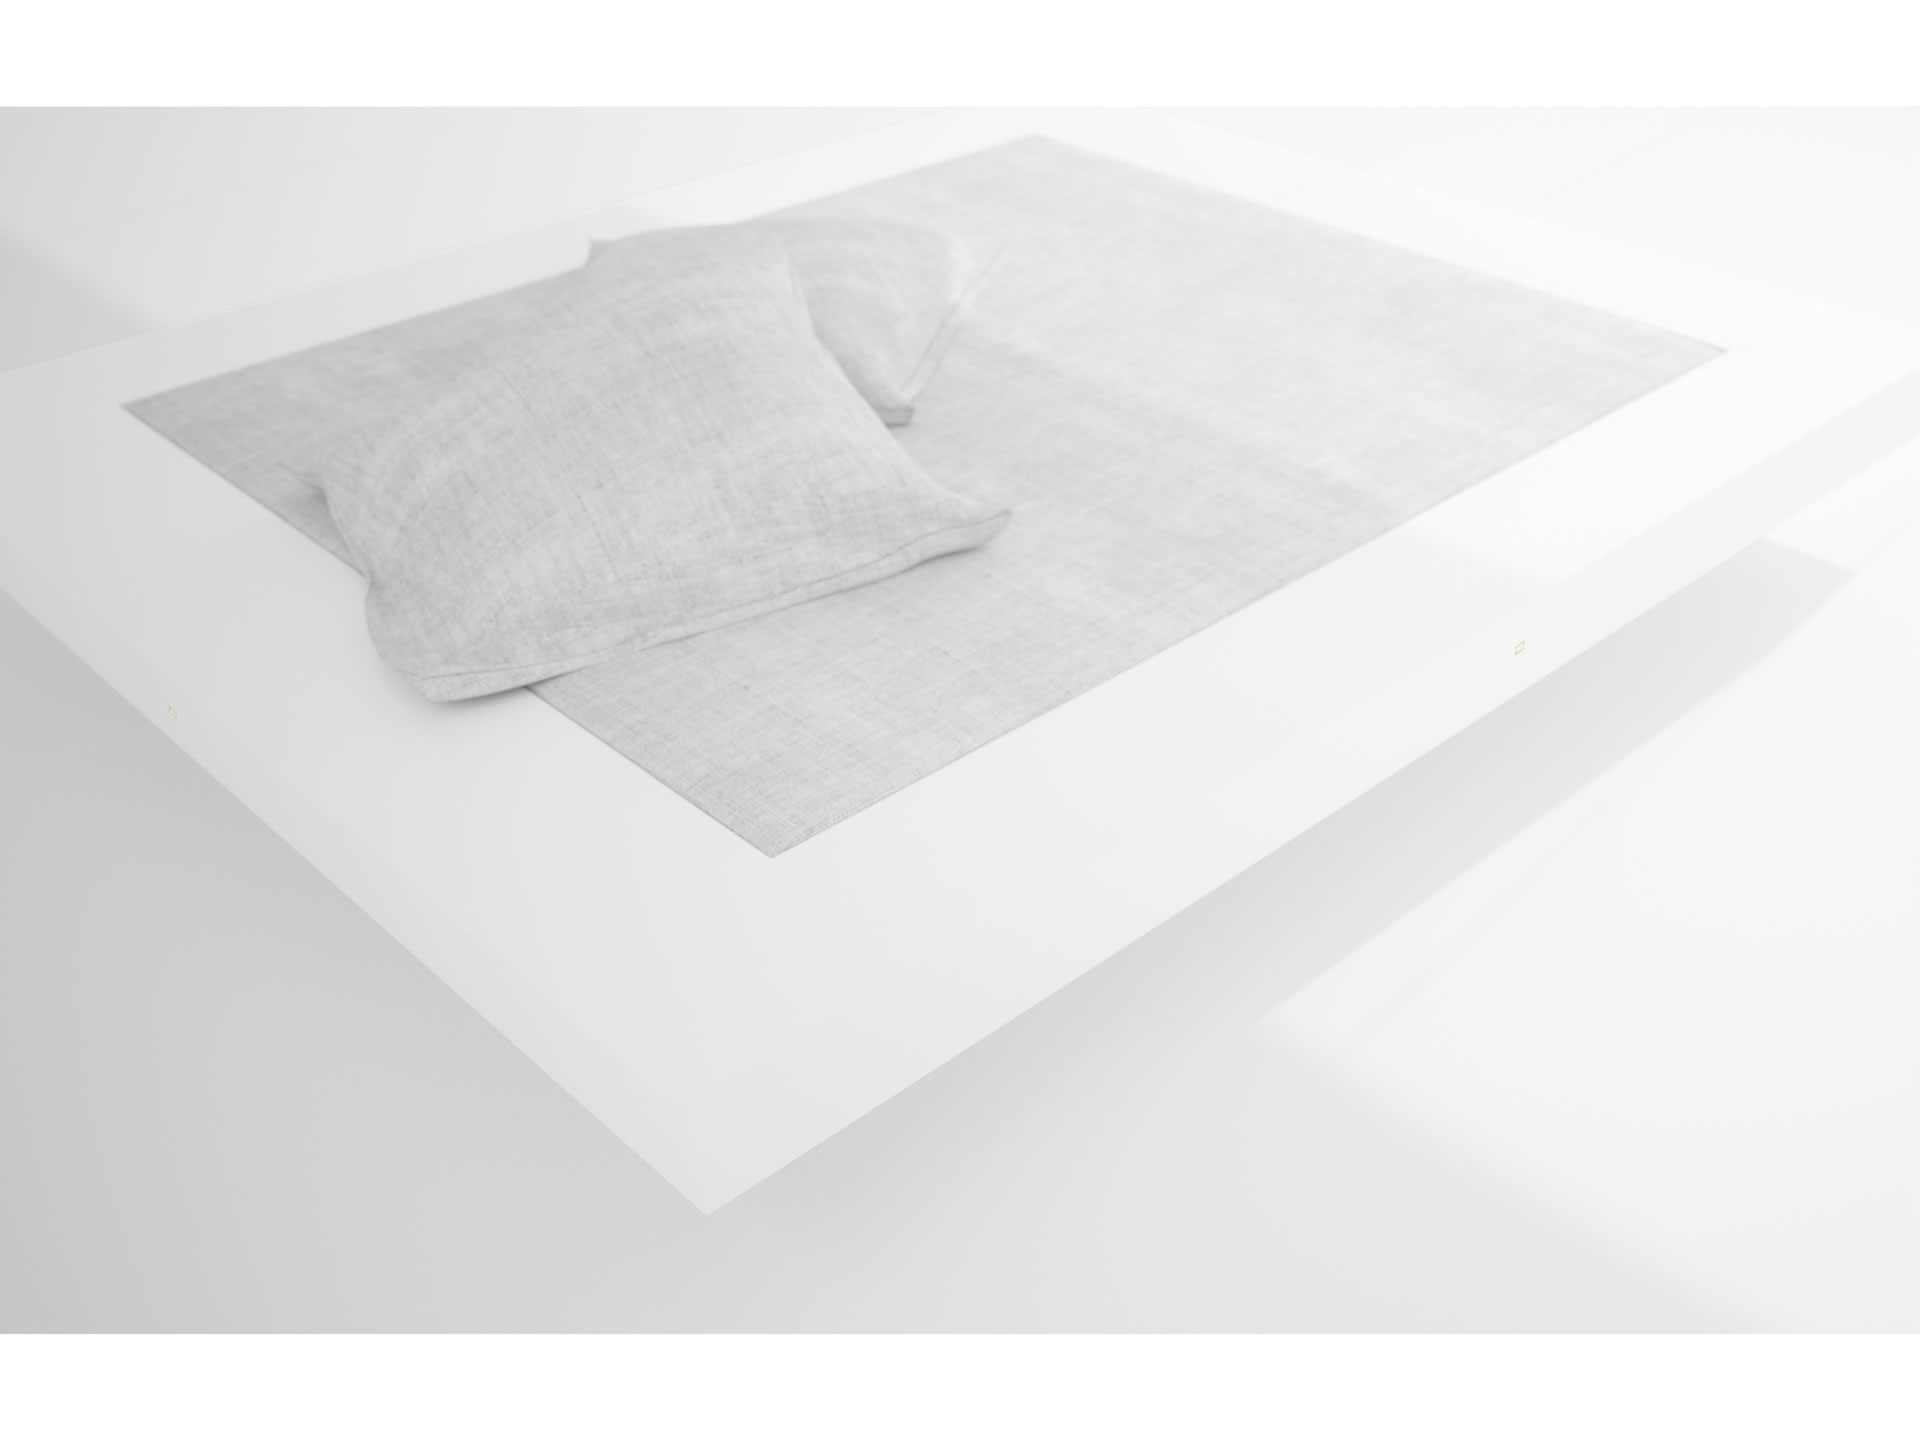 RECHTECK BED II Nobel White Bed Floating